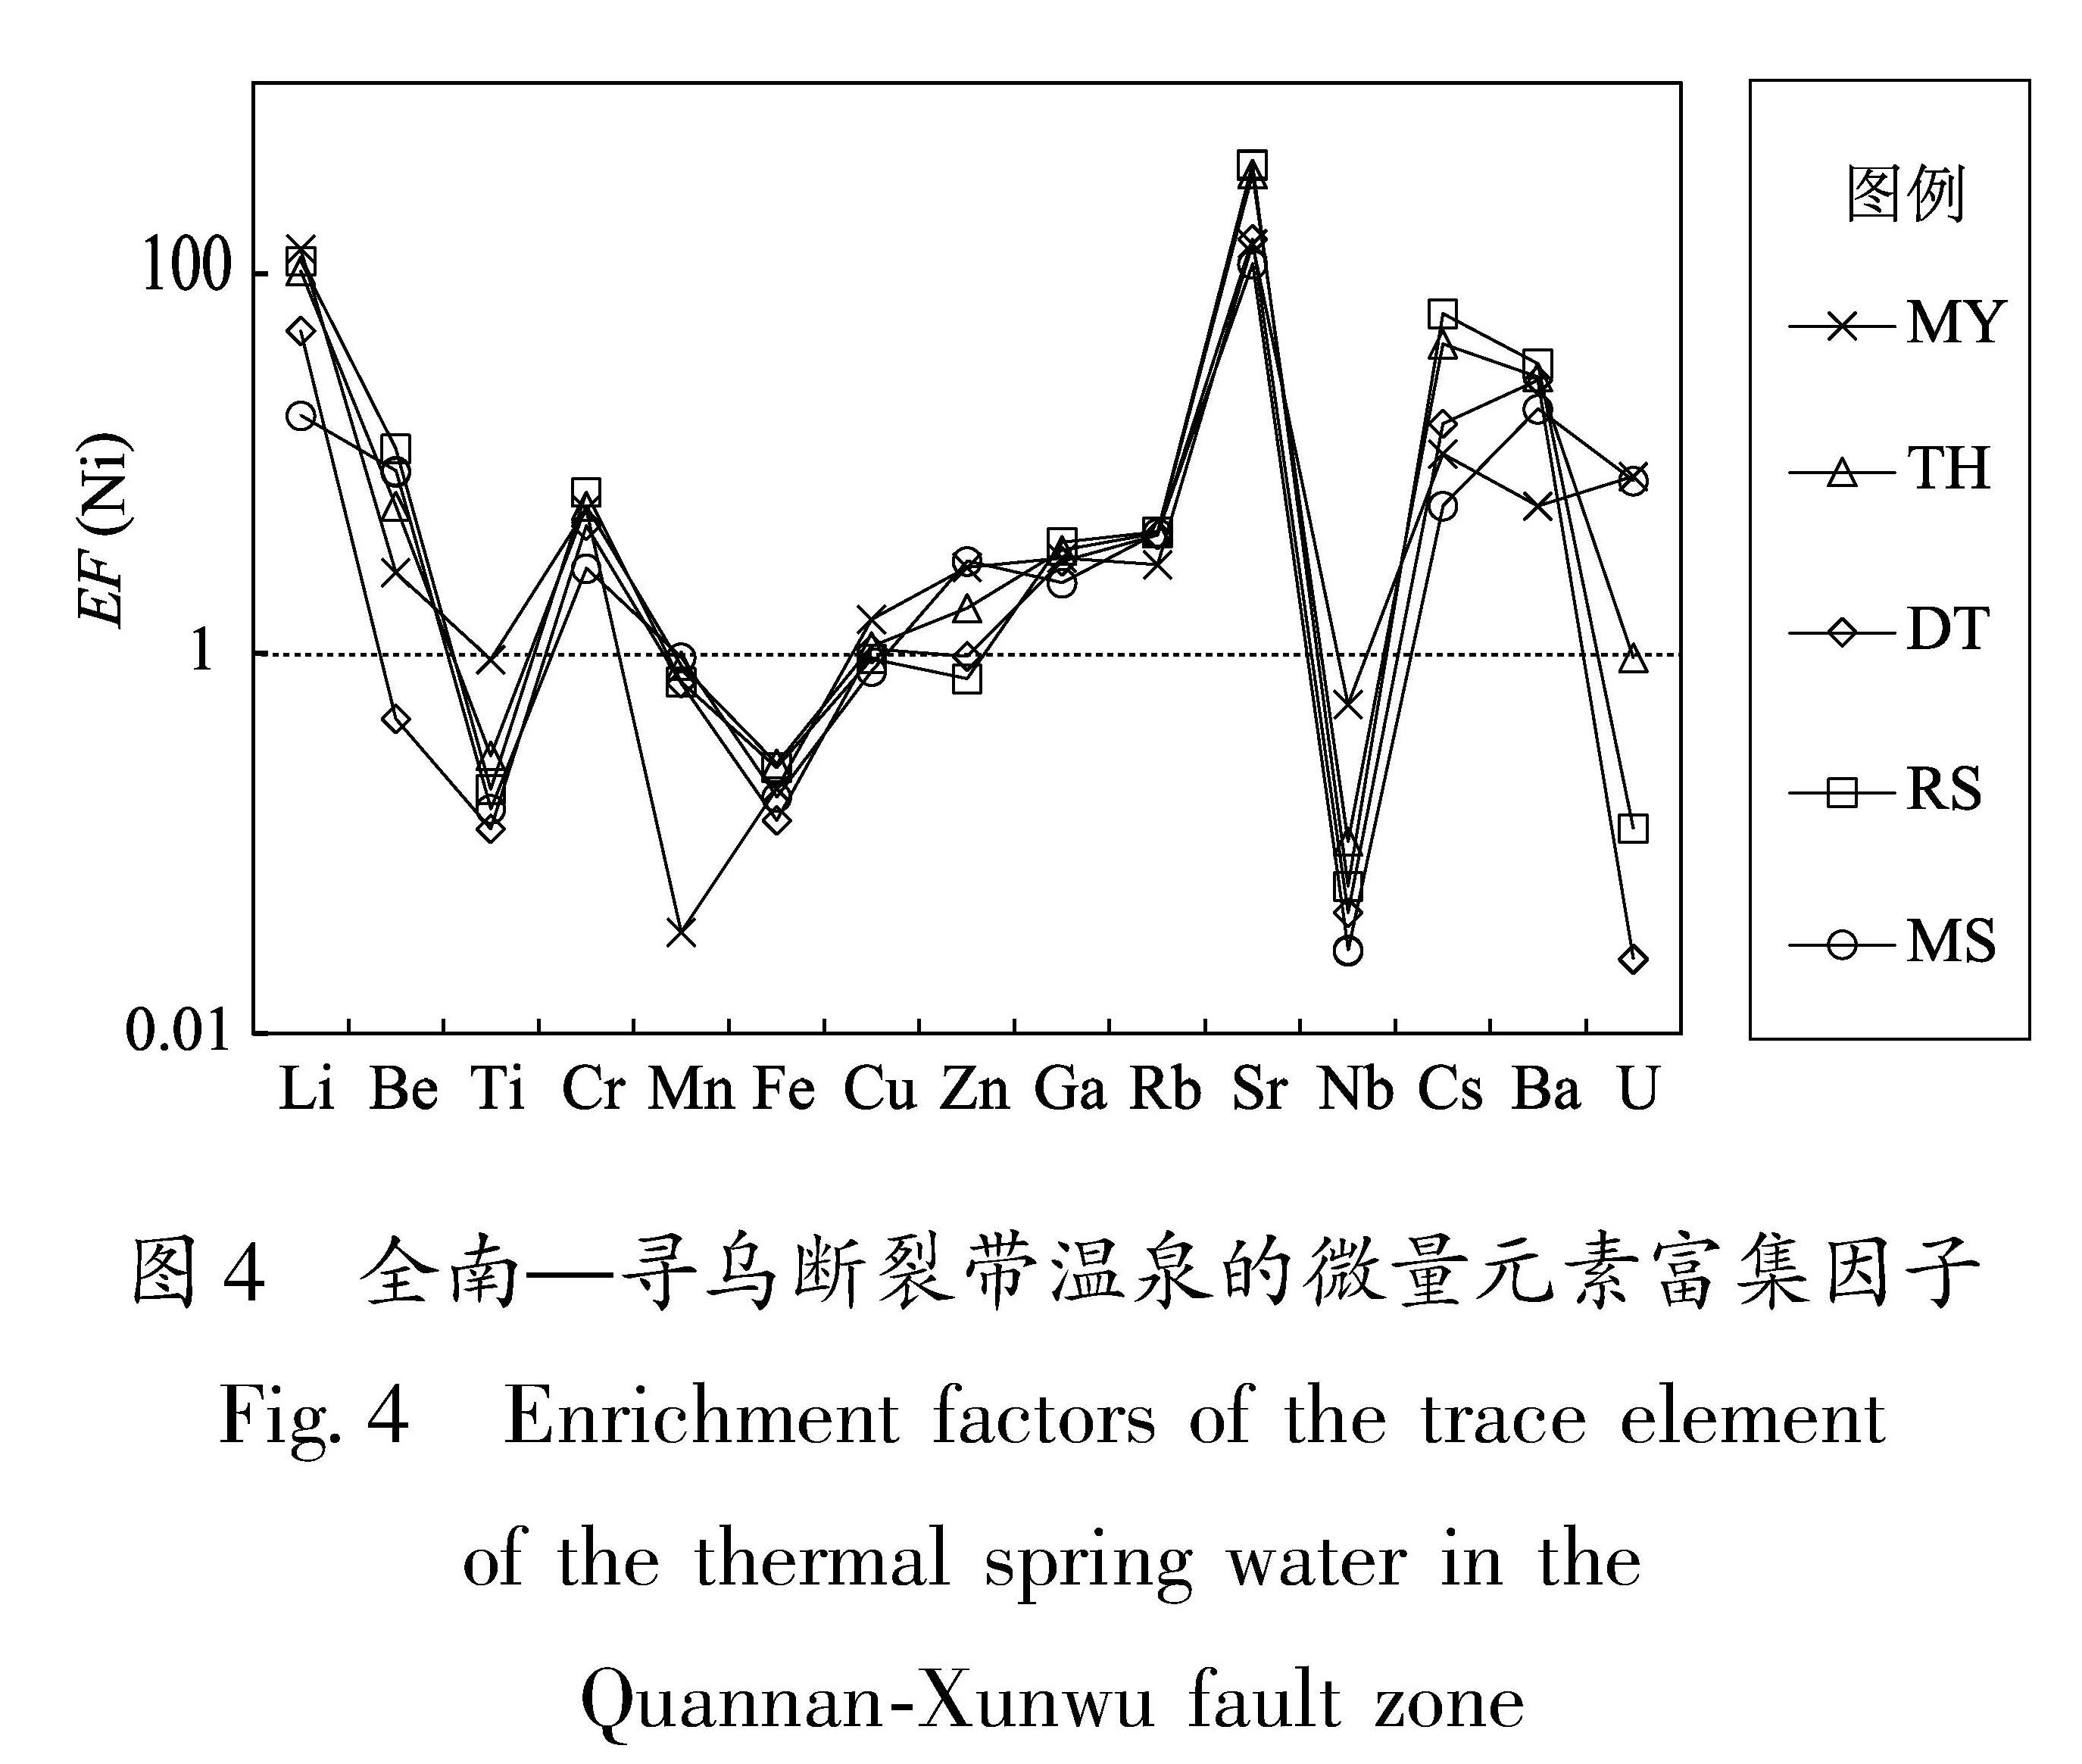 图4 全南—寻乌断裂带温泉的微量元素富集因子<br/>Fig.4 Enrichment factors of the trace element of the thermal spring water in the Quannan-Xunwu fault zone